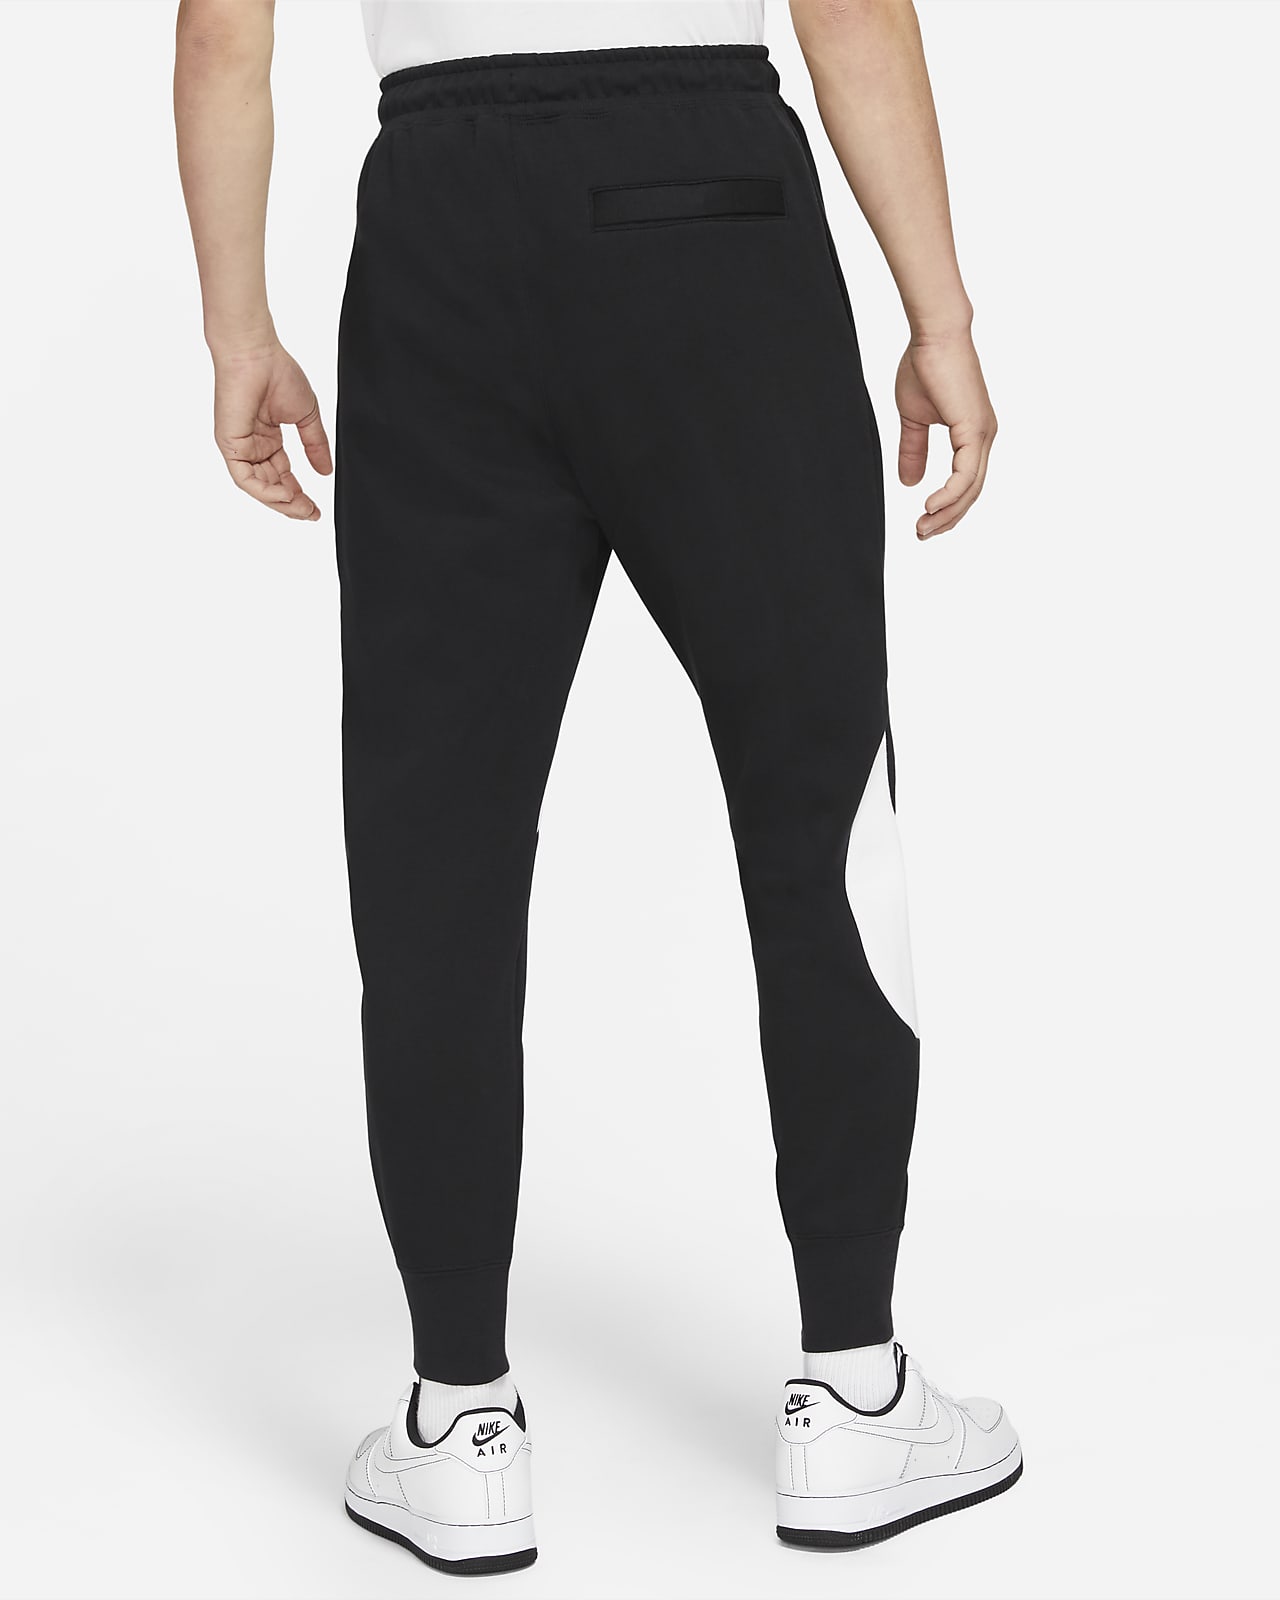 Nike Sportswear Essential Fleece pants in black for women | AW LAB